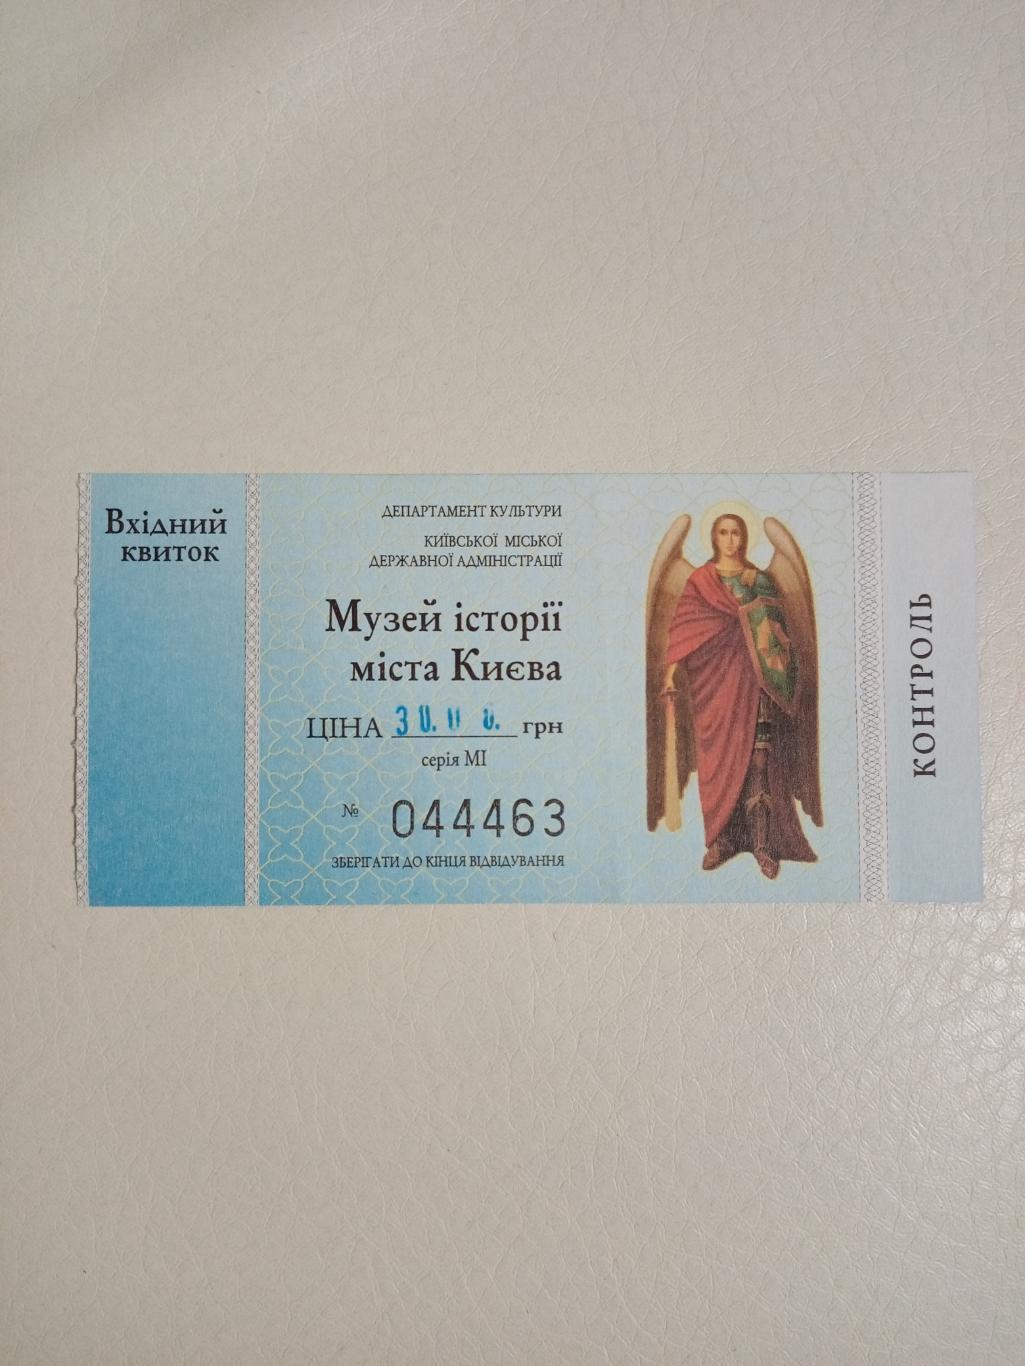 Билет в музей